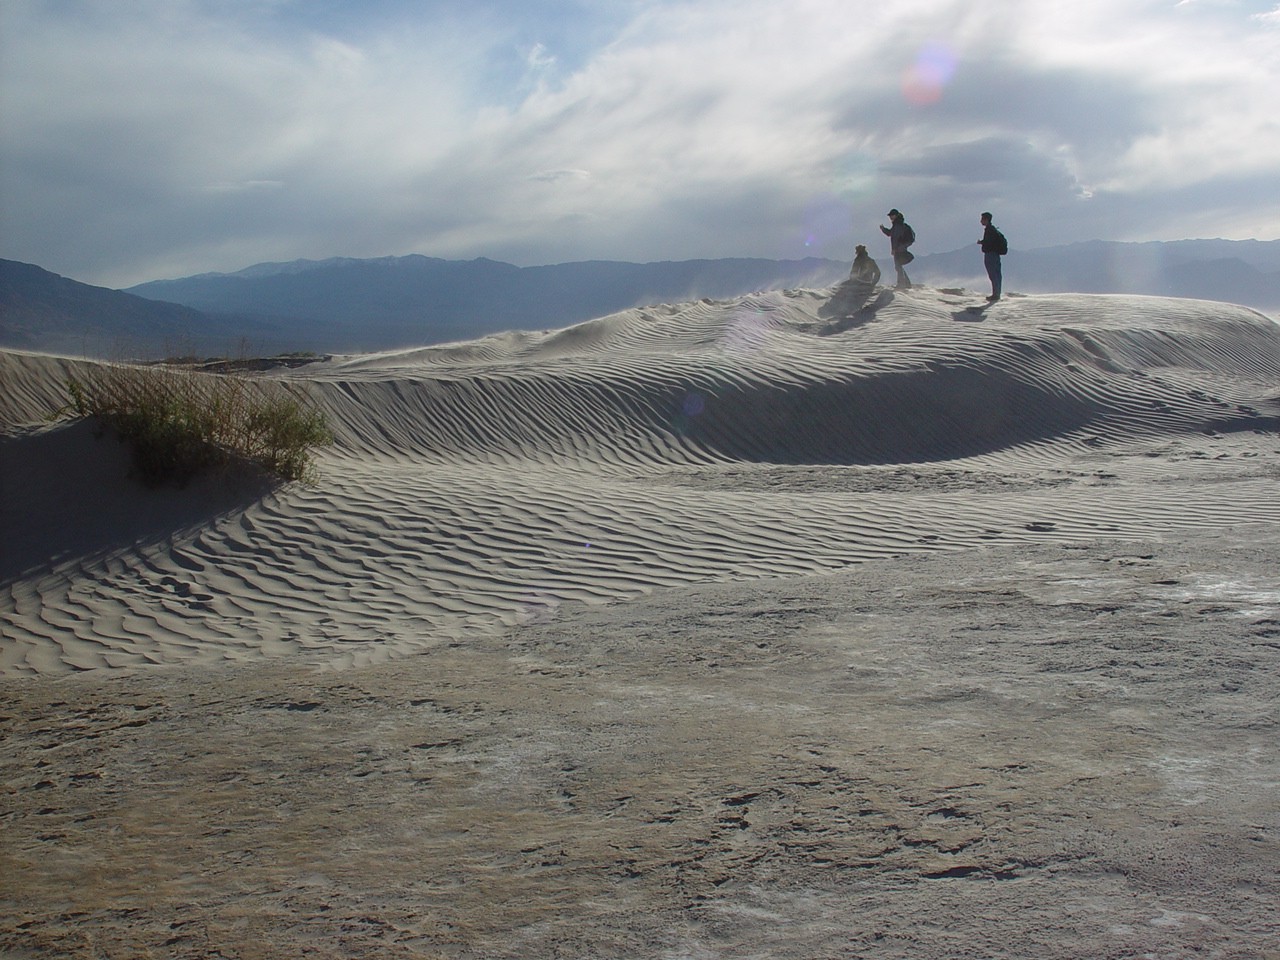 Sand dunes in Death Valley (2003)